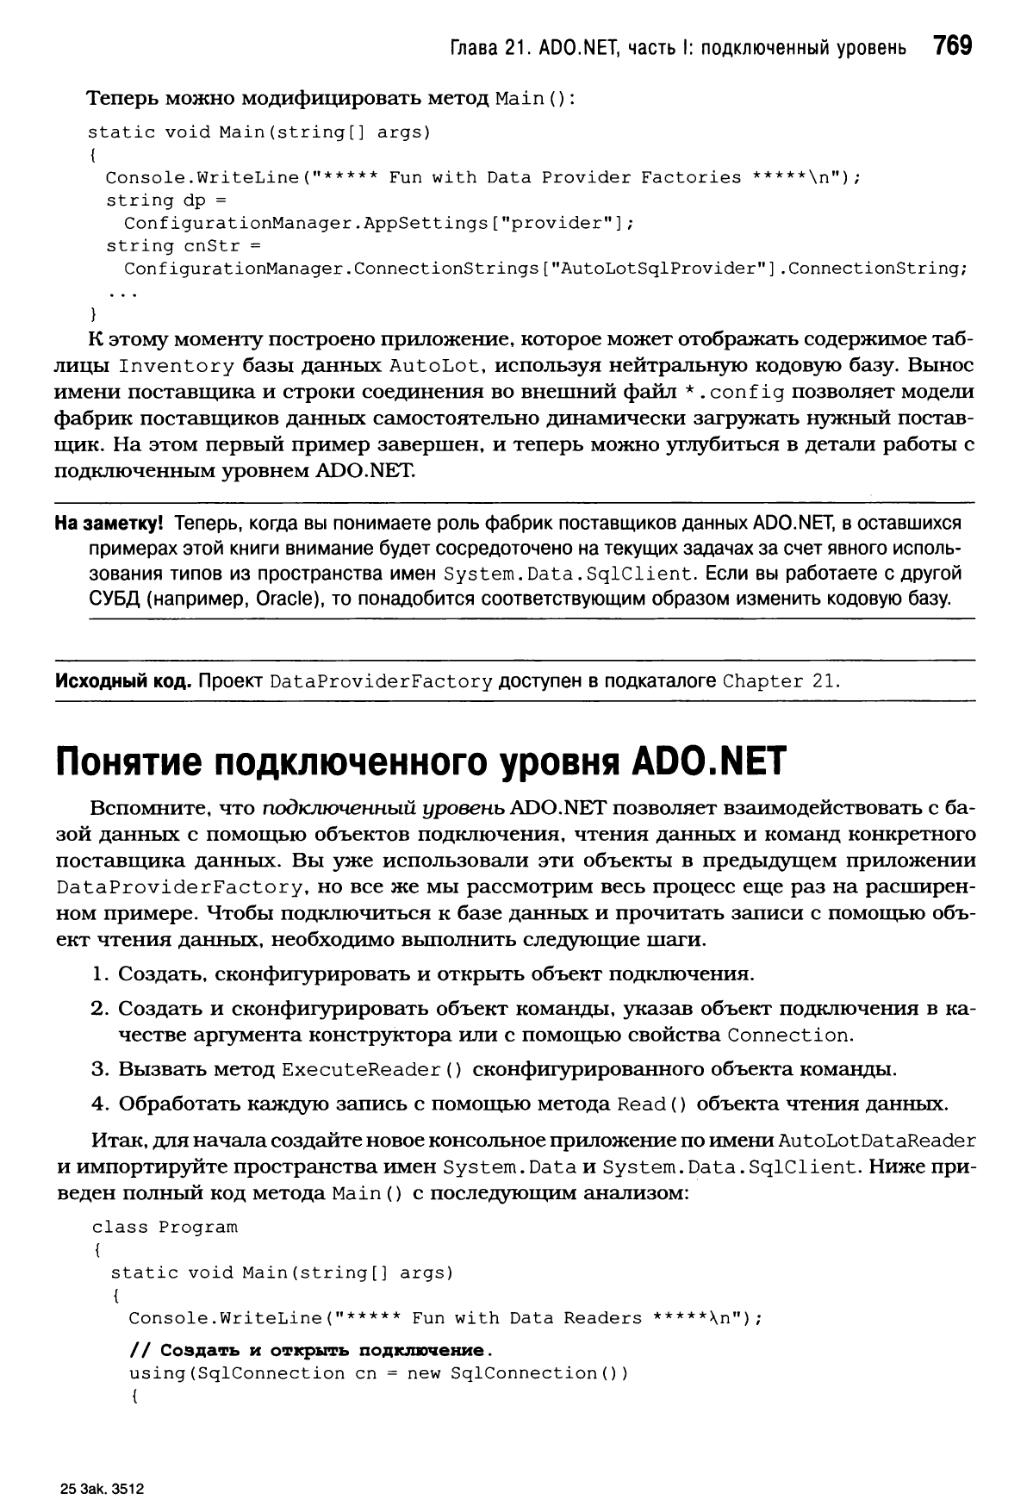 Понятие подключенного уровня ADO.NET